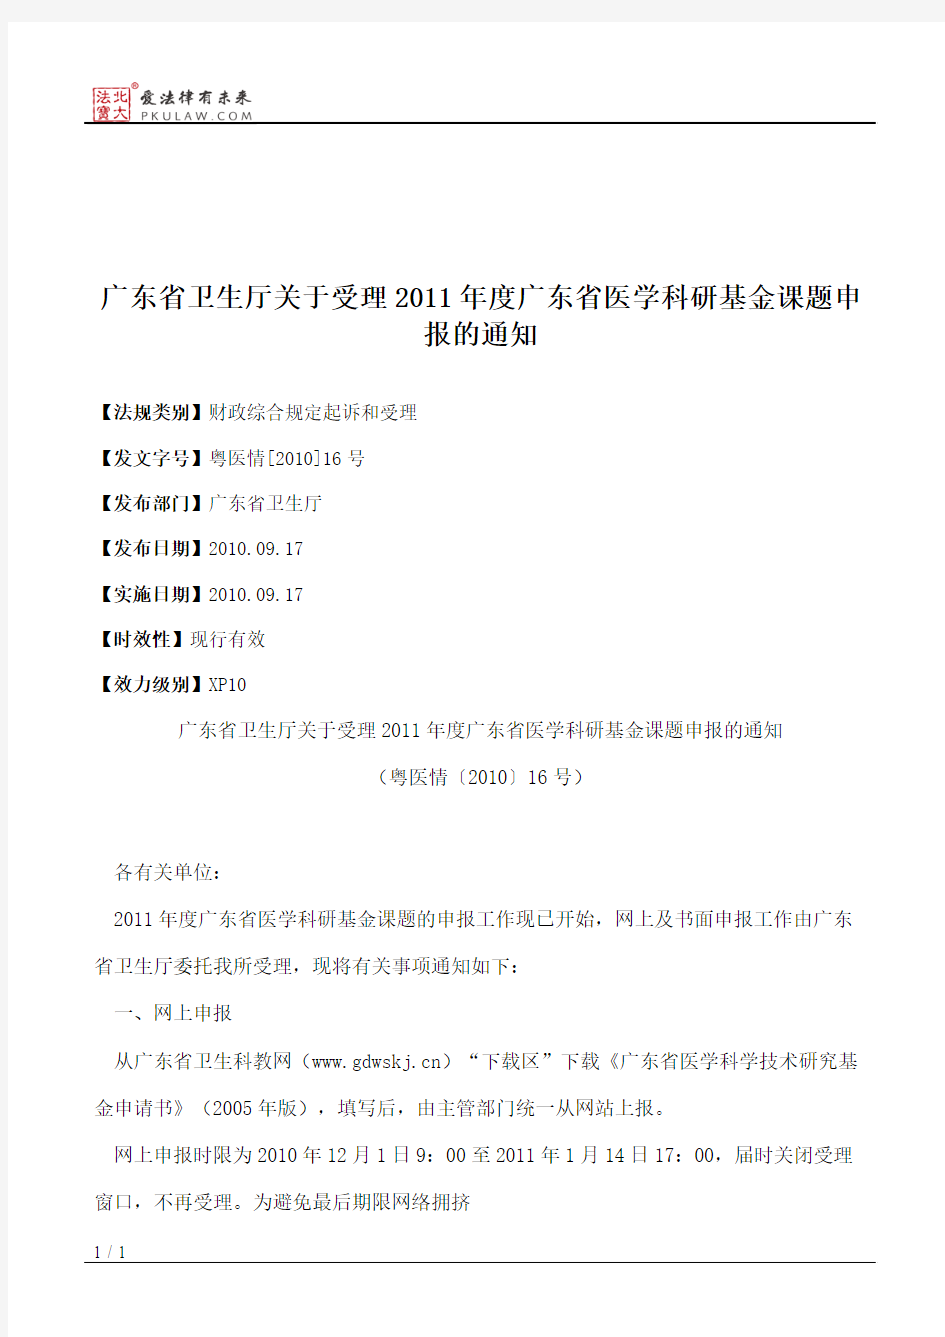 广东省卫生厅关于受理2011年度广东省医学科研基金课题申报的通知